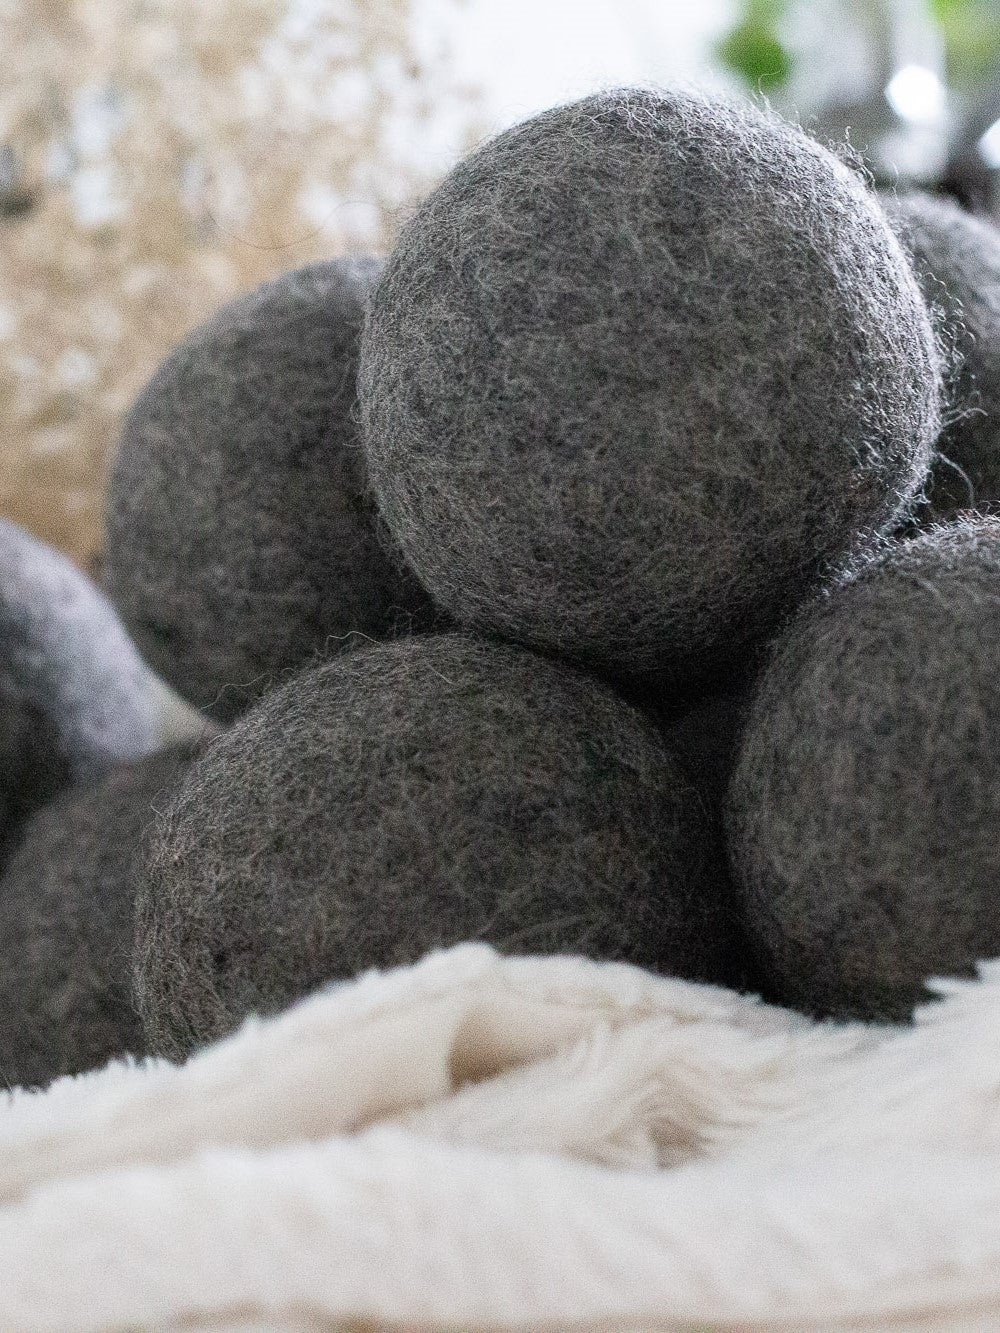 Balles de séchage en laine naturelle d'UpSimply pour une utilisation écologique.